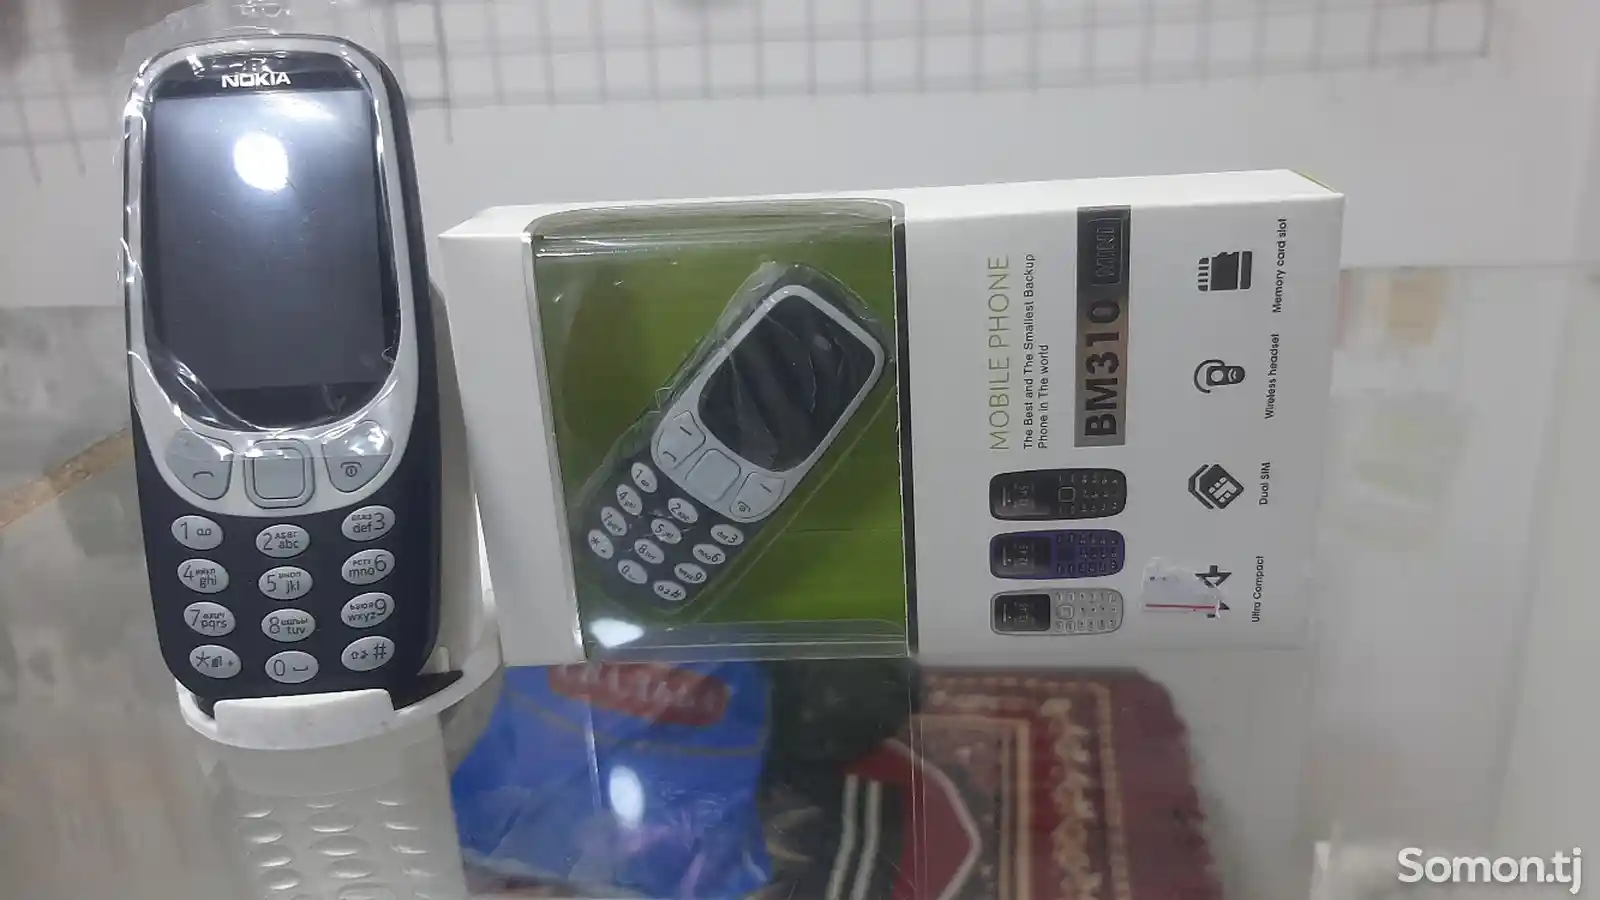 Nokia Bm10-3